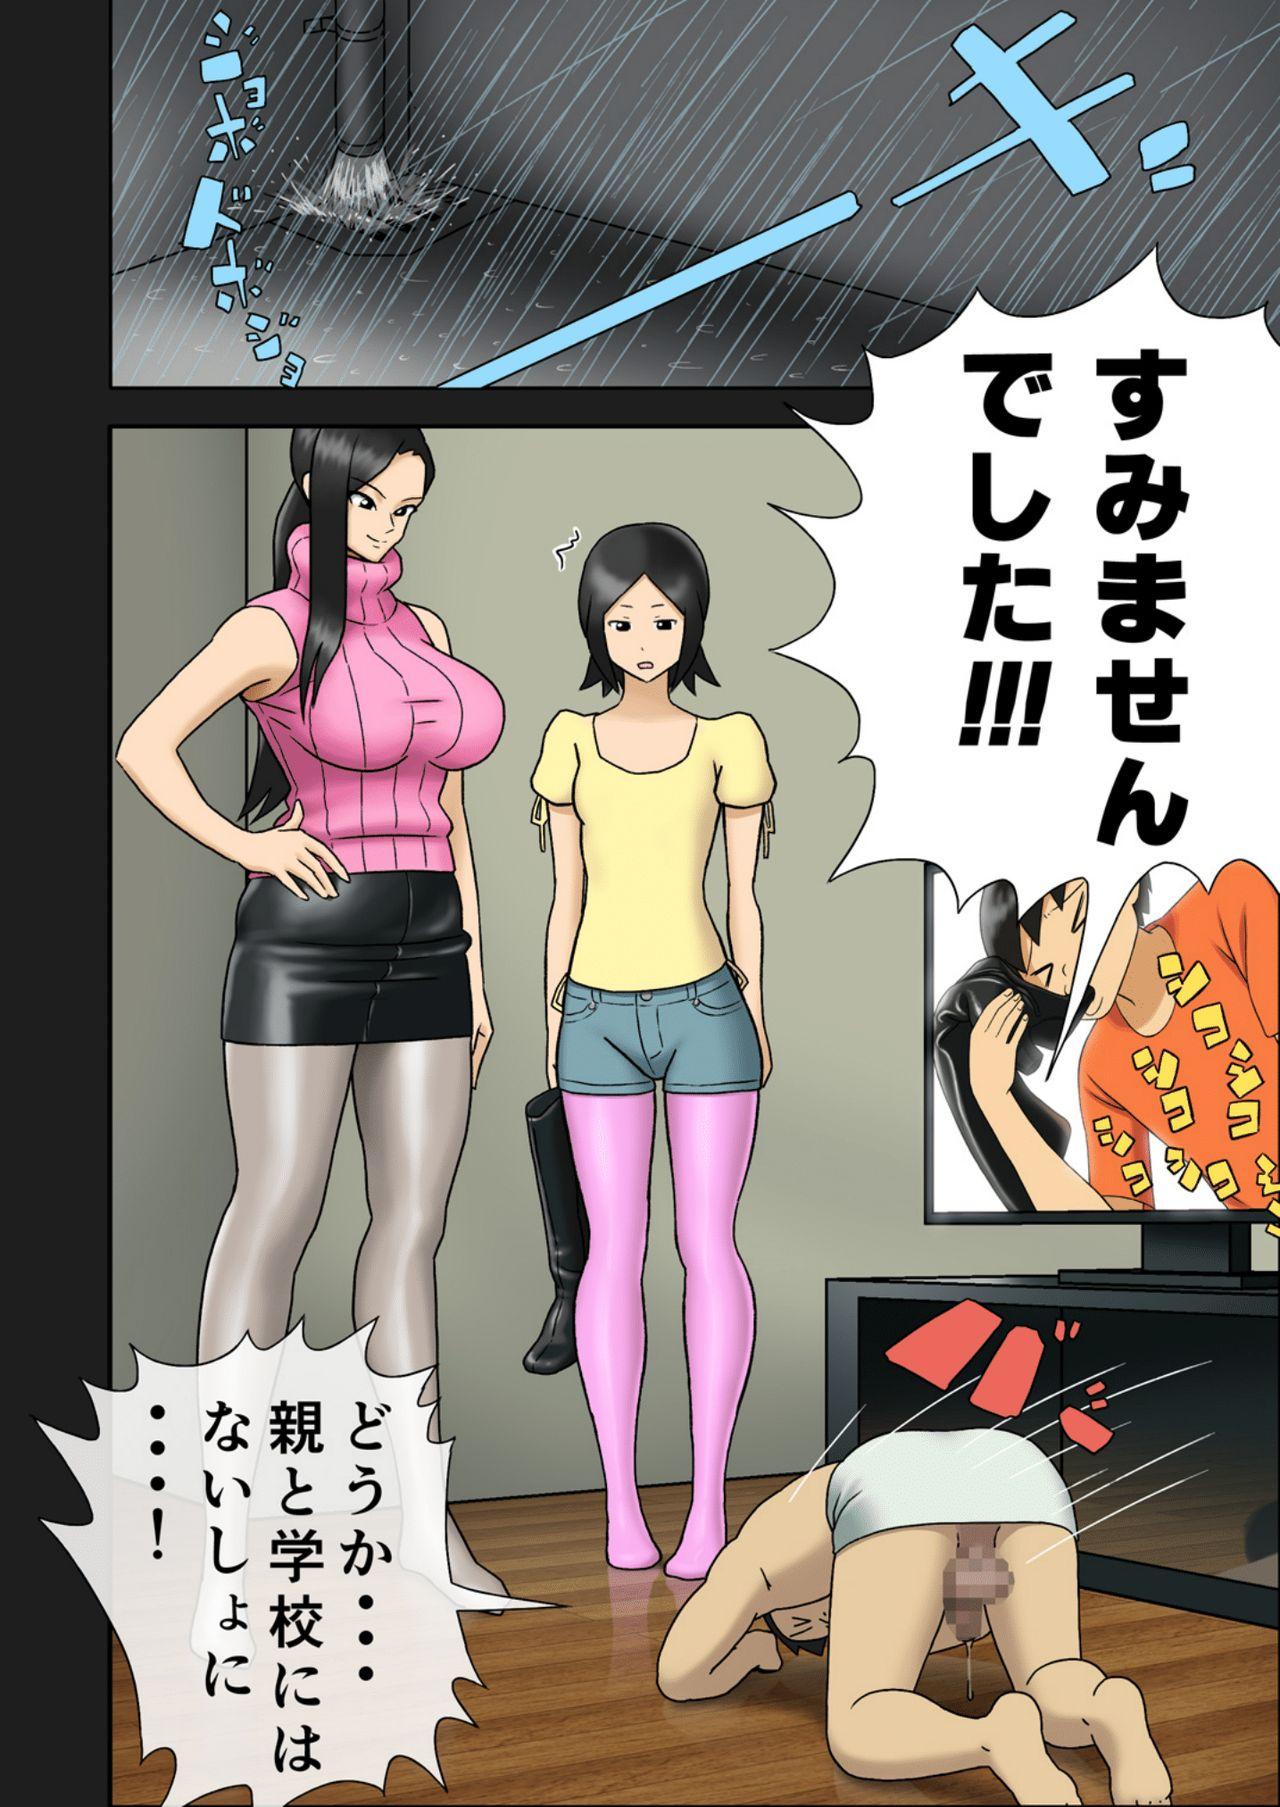 [Enka Boots] Enka Boots no Manga 1 - Juku no Sensei ga Joou-sama V4.0 10